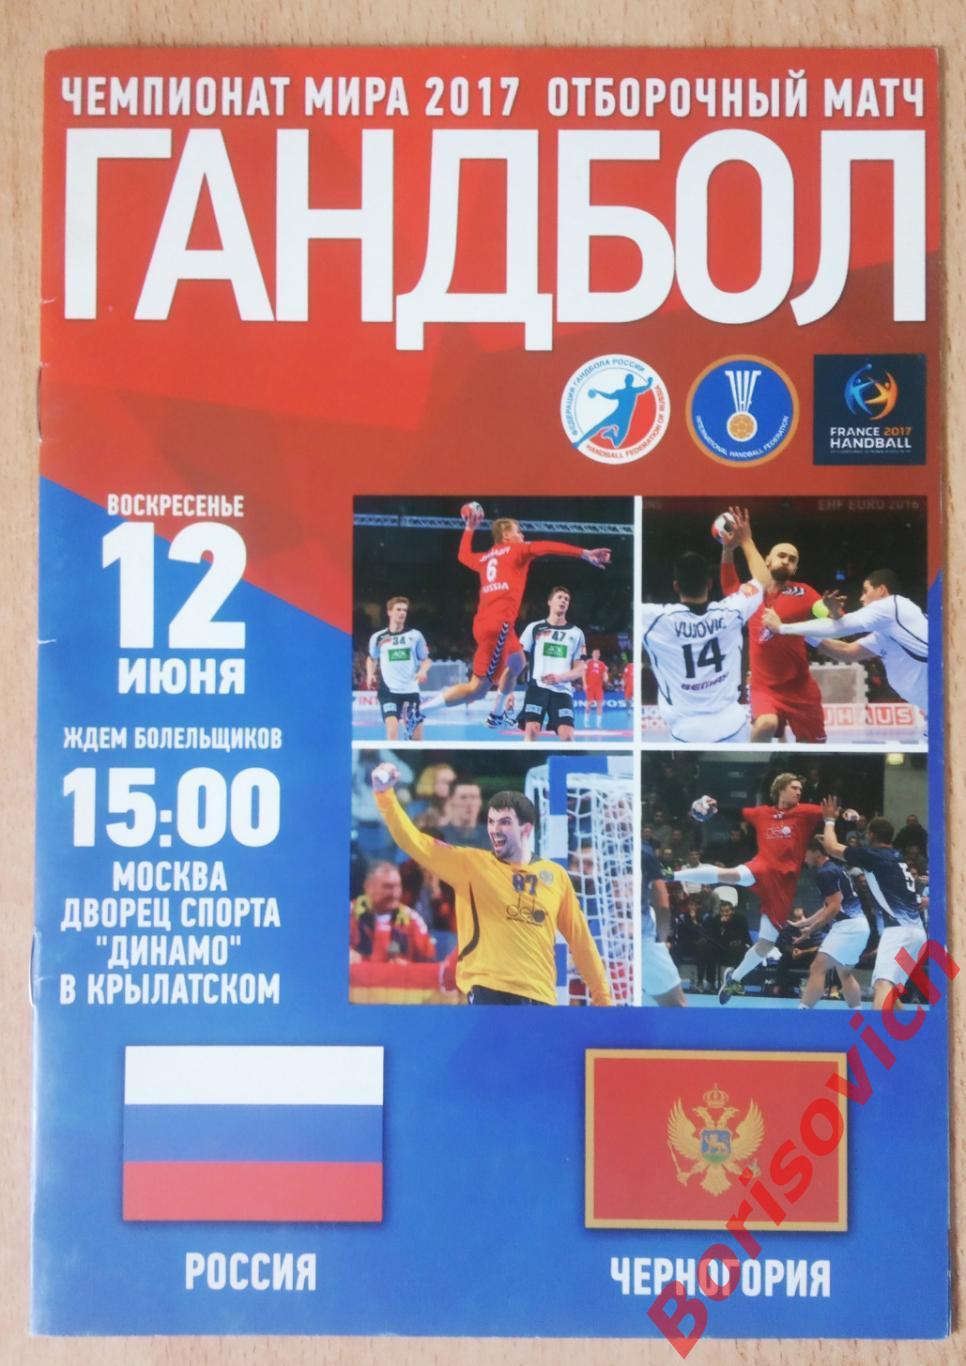 Россия - Черногория 12-06-2016 Отборочный матч чемпионата мира 2017